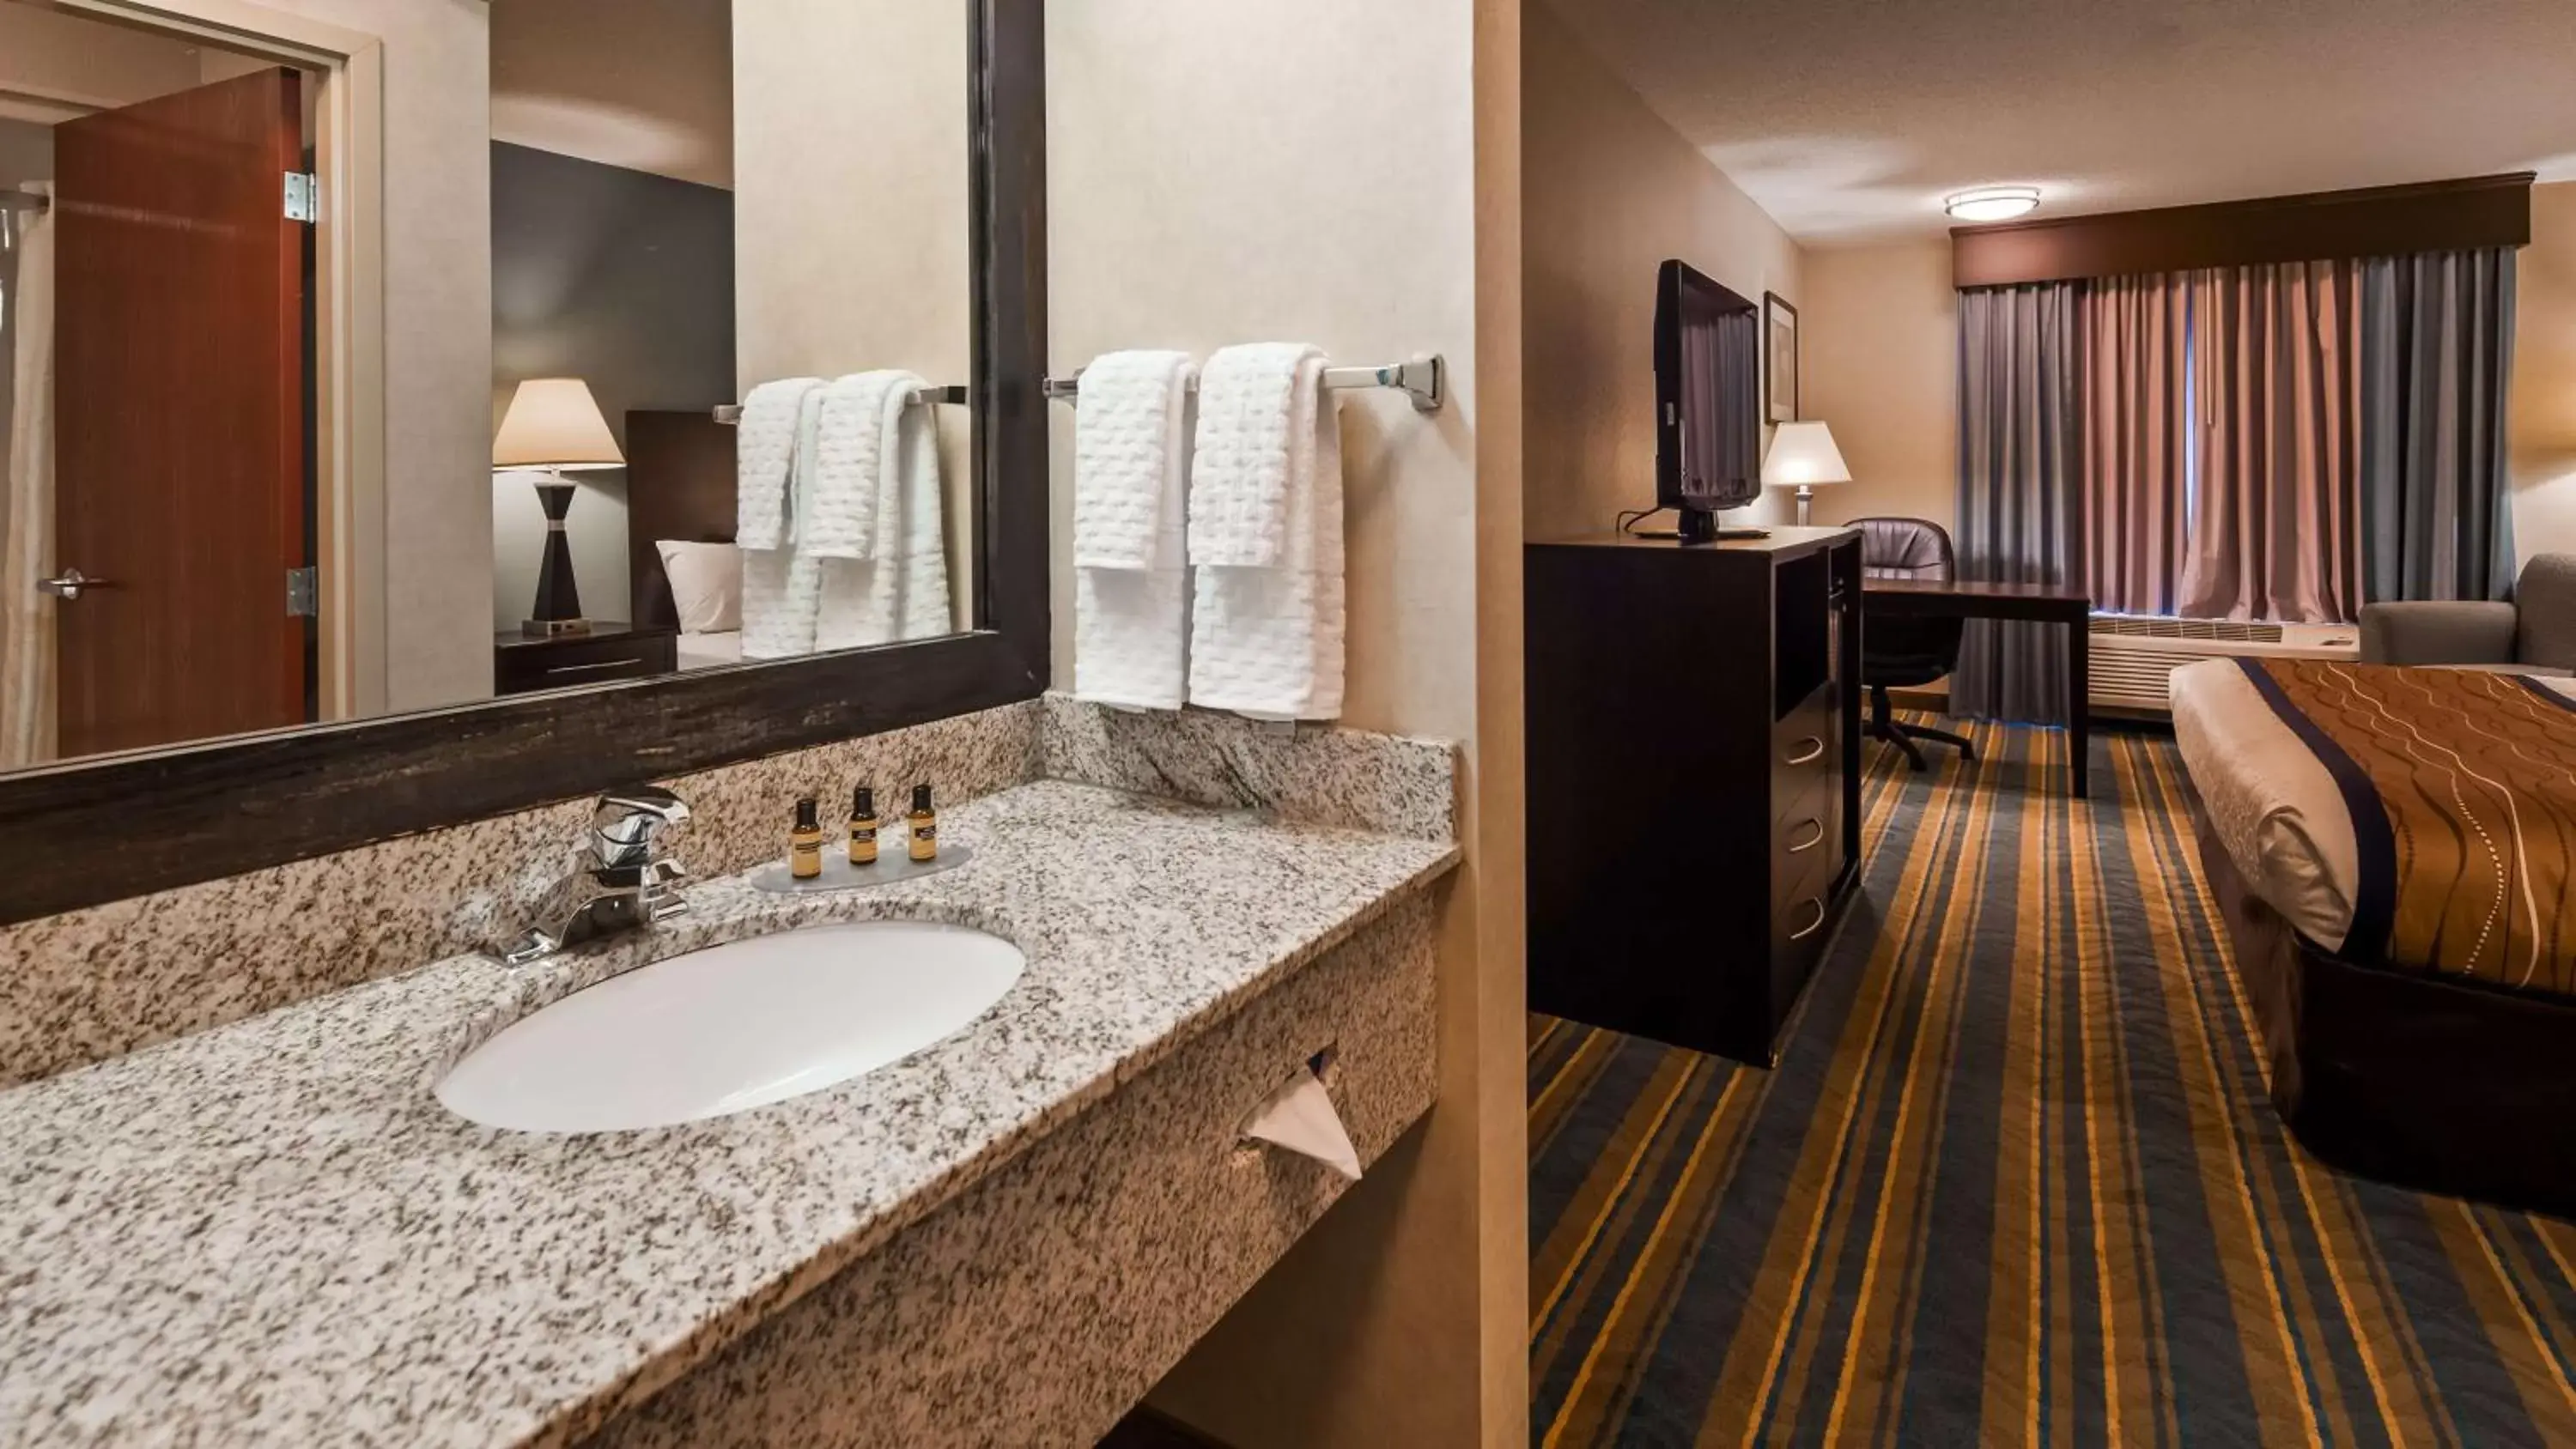 Photo of the whole room, Bathroom in Best Western Plus Berkshire Hills Inn & Suites